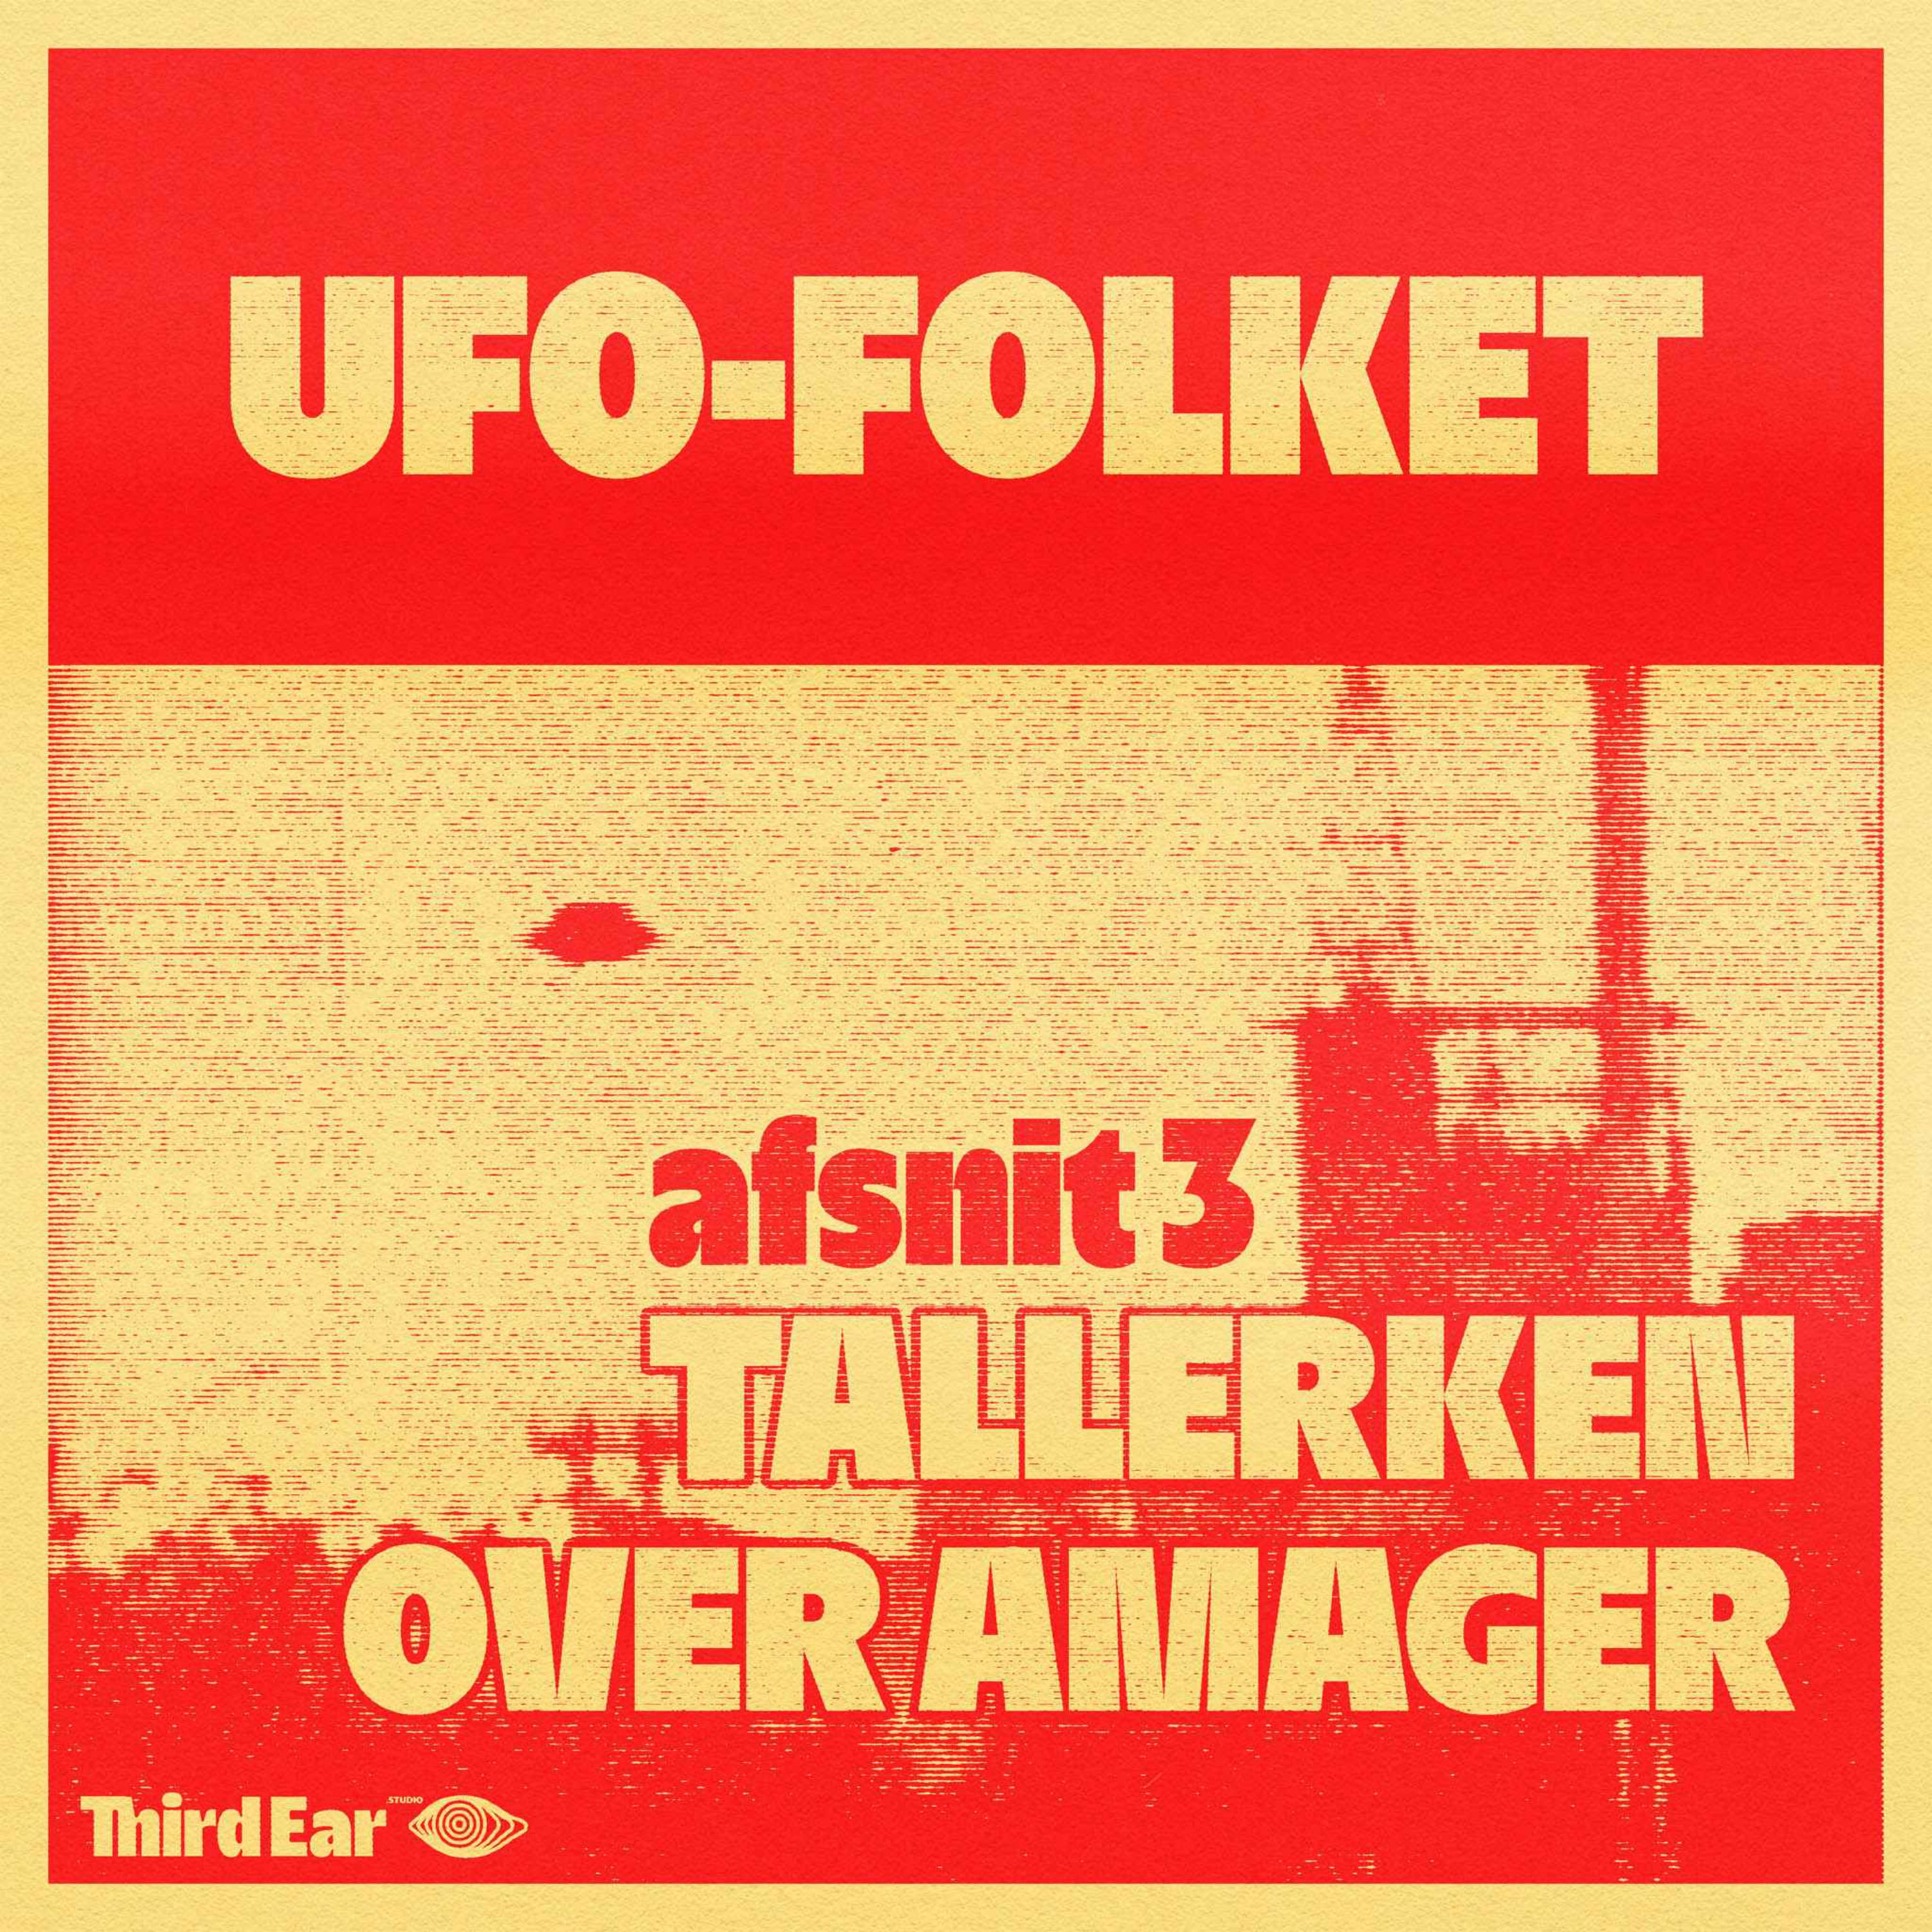 UFO-Folket afsnit 3 - Tallerken over Amager